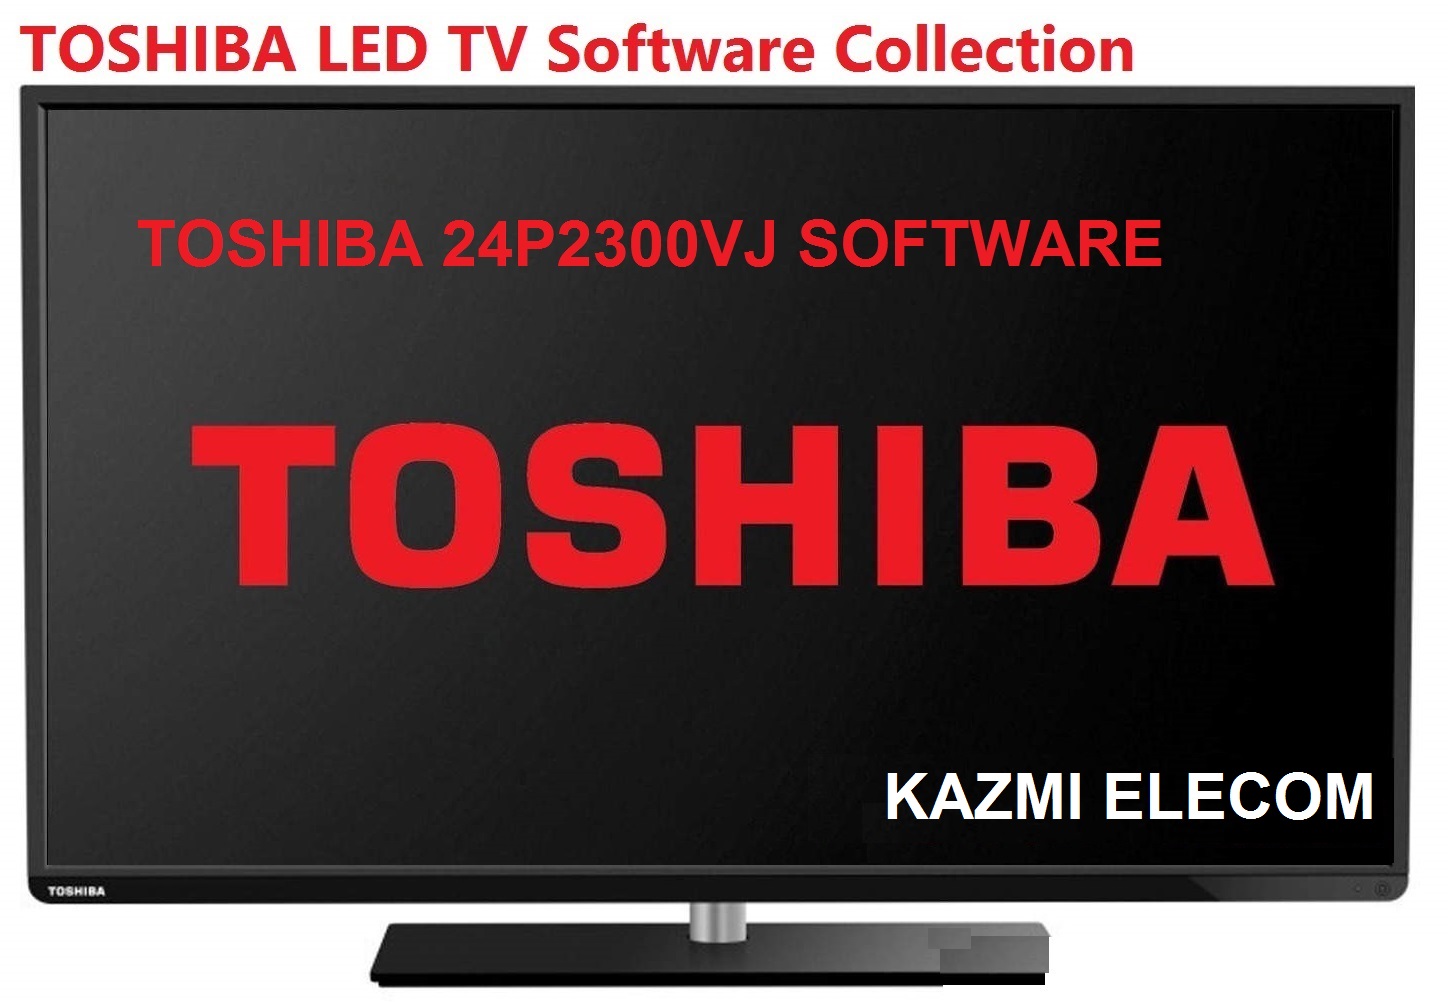 Toshiba 24P2300Vj